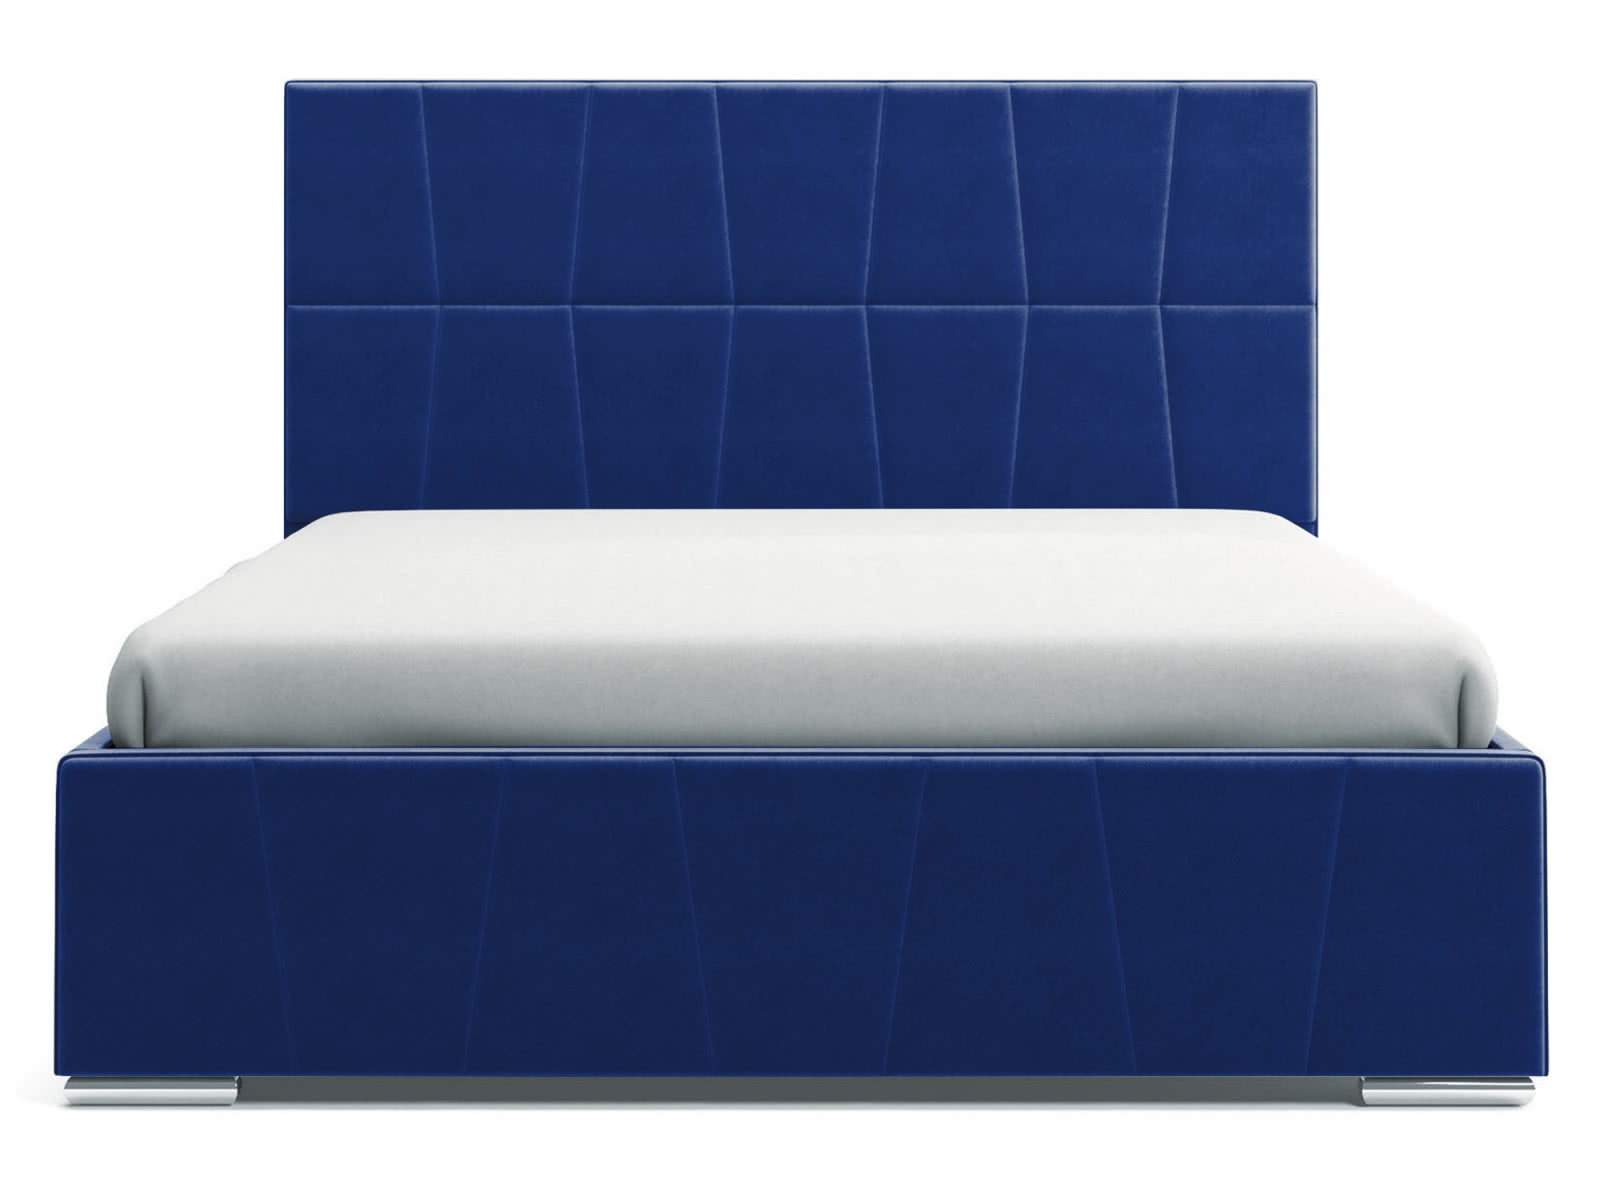 Купить Кровать СтолЛайн Пассаж 140x200 с подъемным механизмом недорого в интернет-магазине